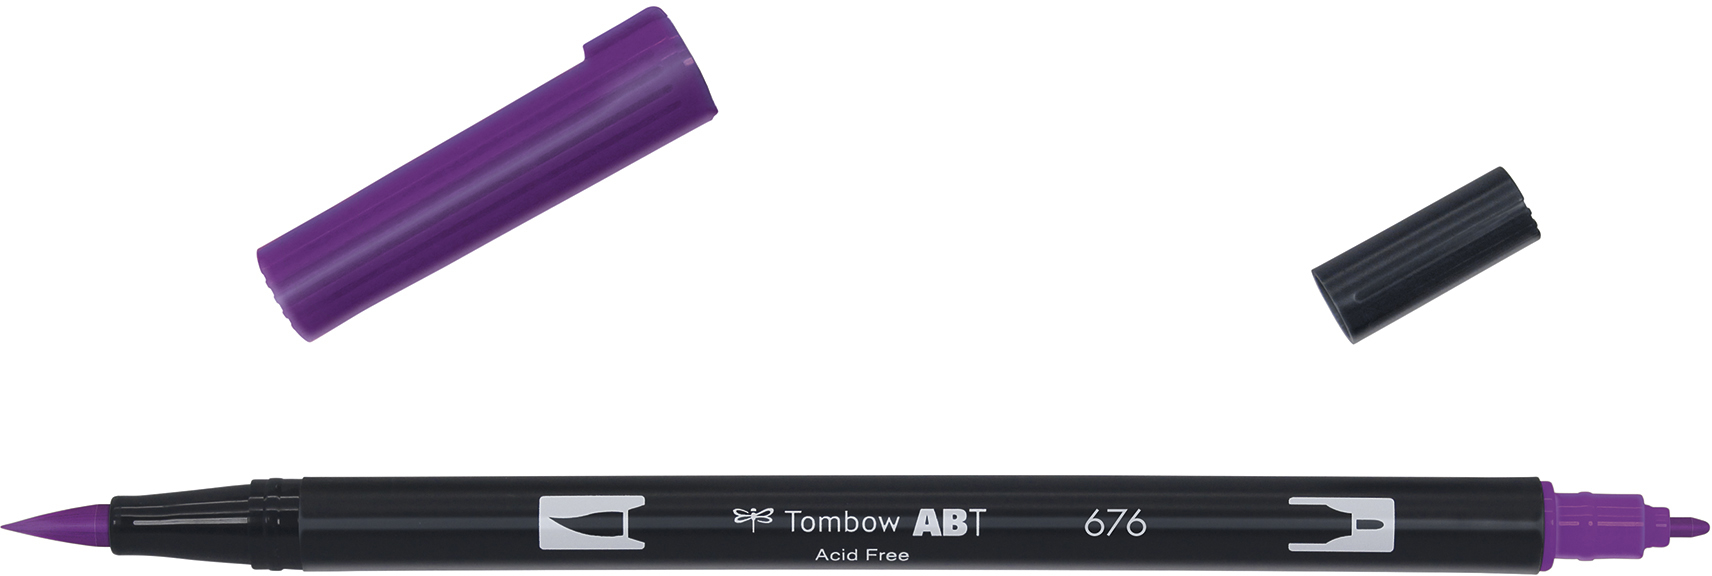 TOMBOW Dual Brush Pen ABT 676 royal purple